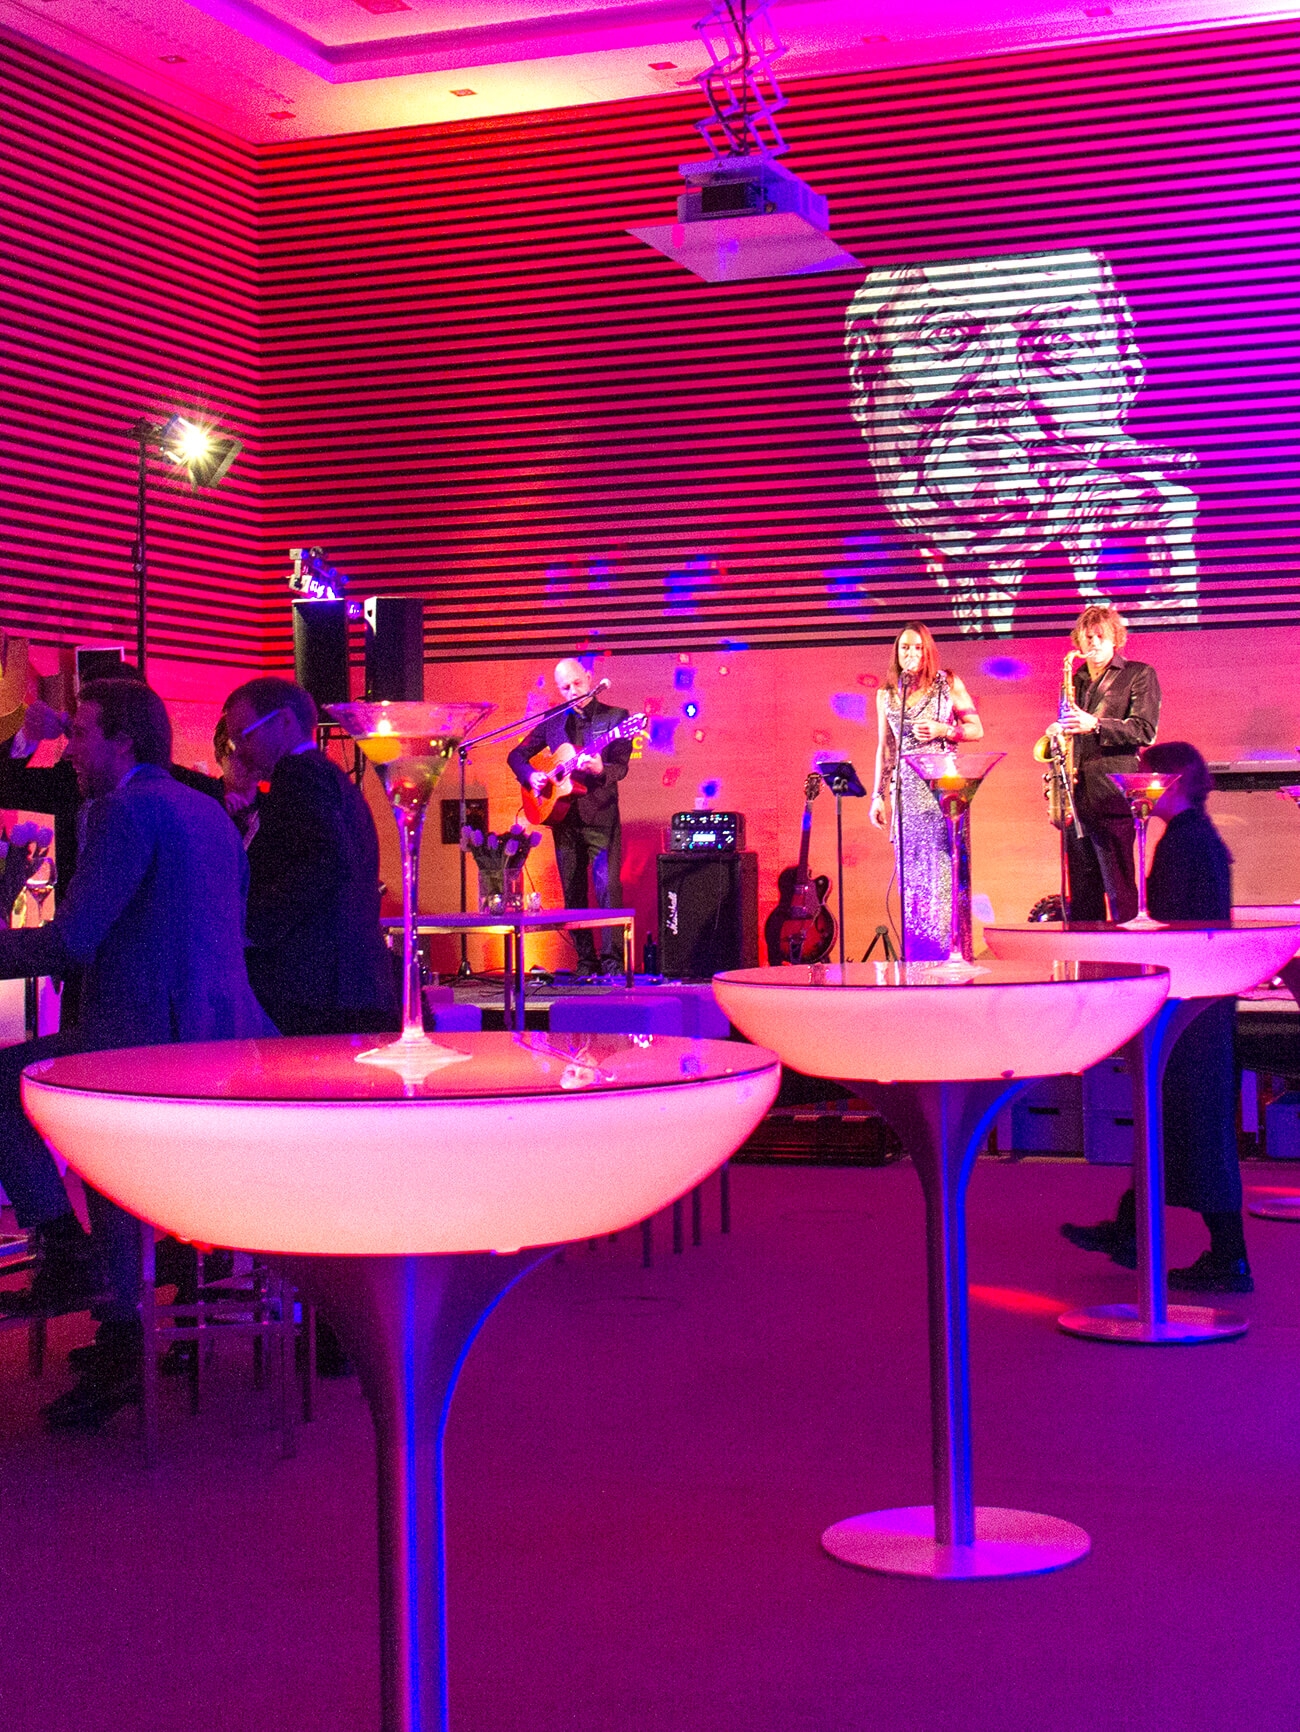 Aufnahme in der Eventlocation am Tegernsee mit einem in roten Lichten beleuchteten Raum, in dem mehrere Stehtische mit Barhockern stehen, um die herum sich mehrere Personen versammeln und im Hintergrund spielt eine Live-Band.